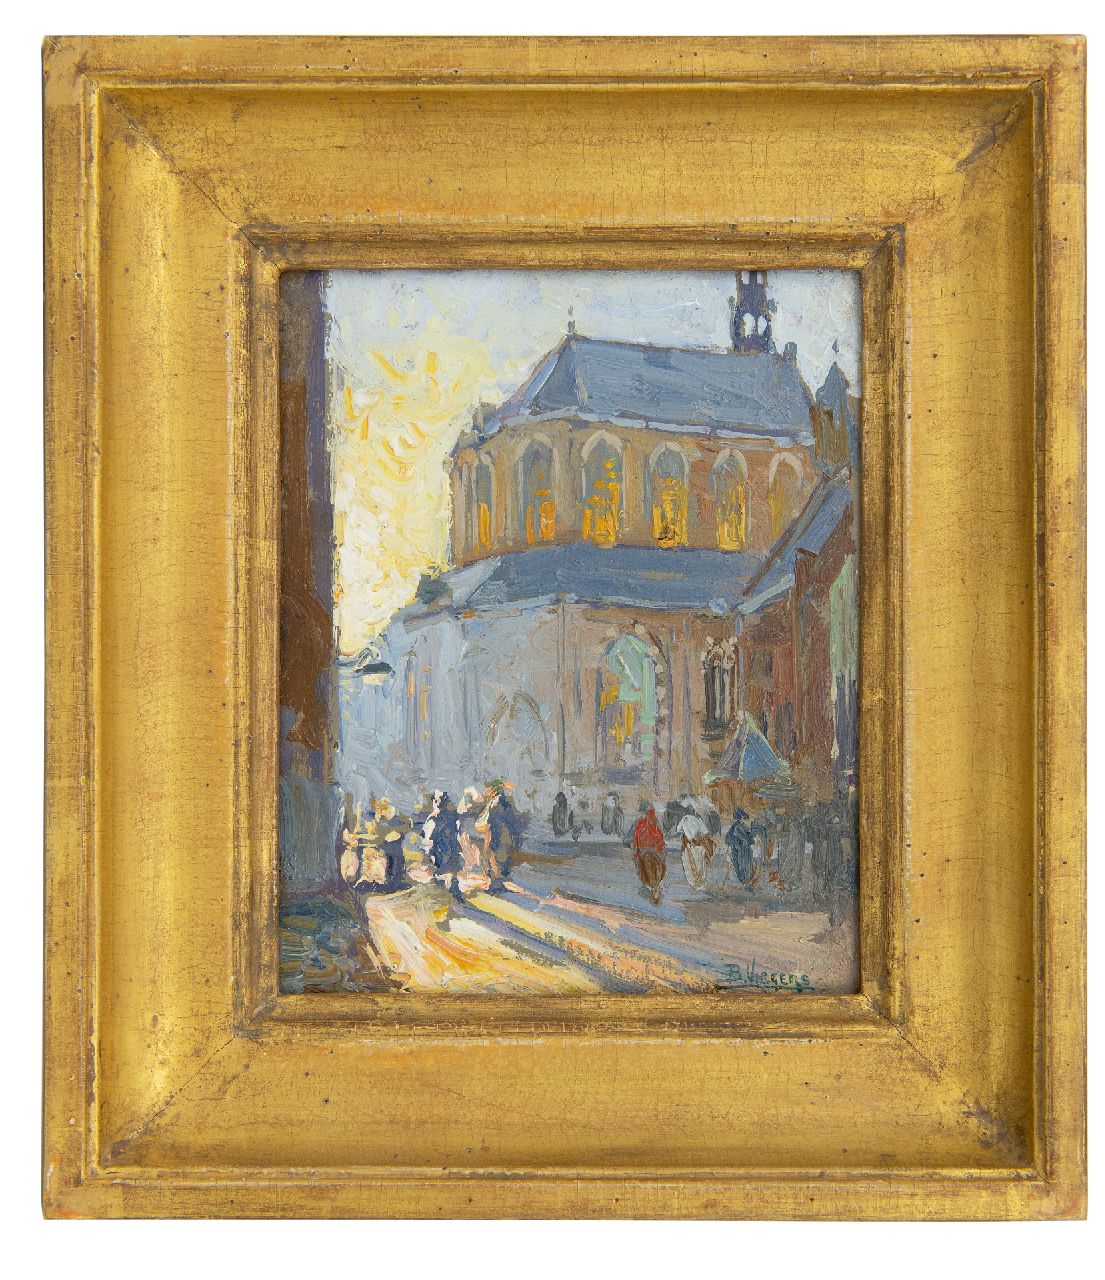 Viegers B.P.  | Bernardus Petrus 'Ben' Viegers | Schilderijen te koop aangeboden | Achter de Grote Kerk, Den Haag, olieverf op papier op paneel 18,2 x 14,5 cm, gesigneerd rechtsonder